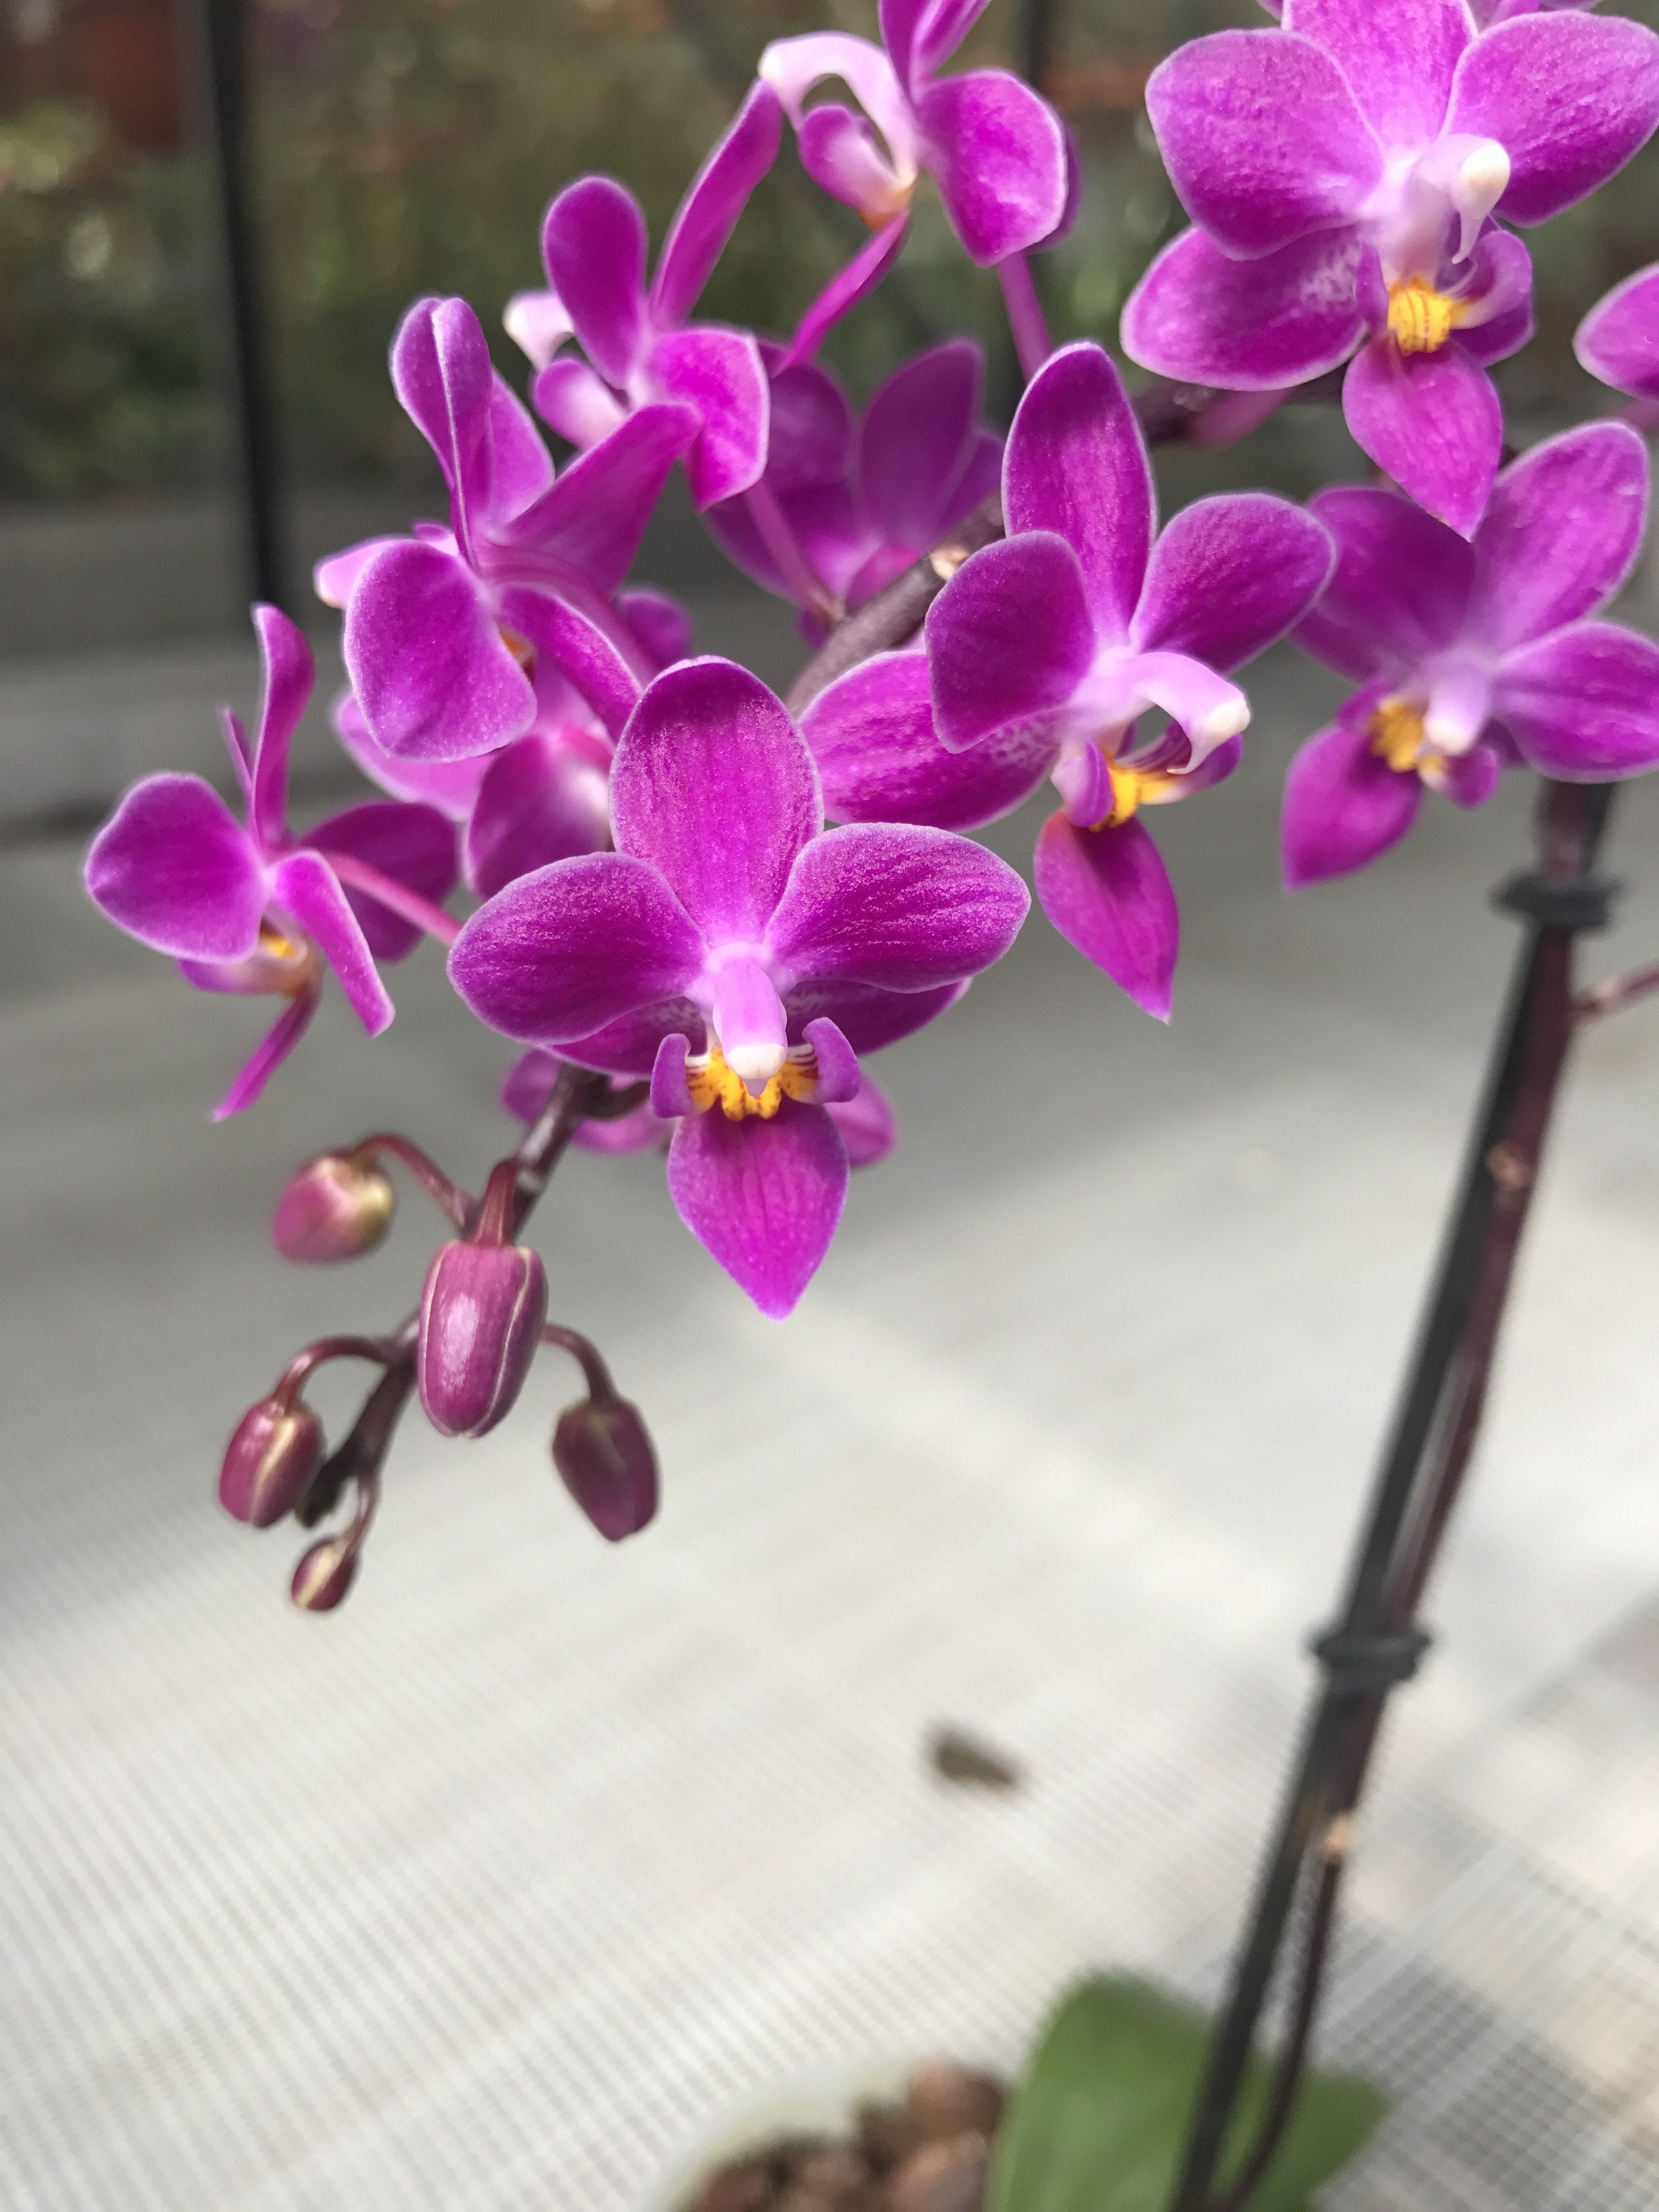 Phalaenopsis equestris "B#100" AM/AOS "Dark Purple"